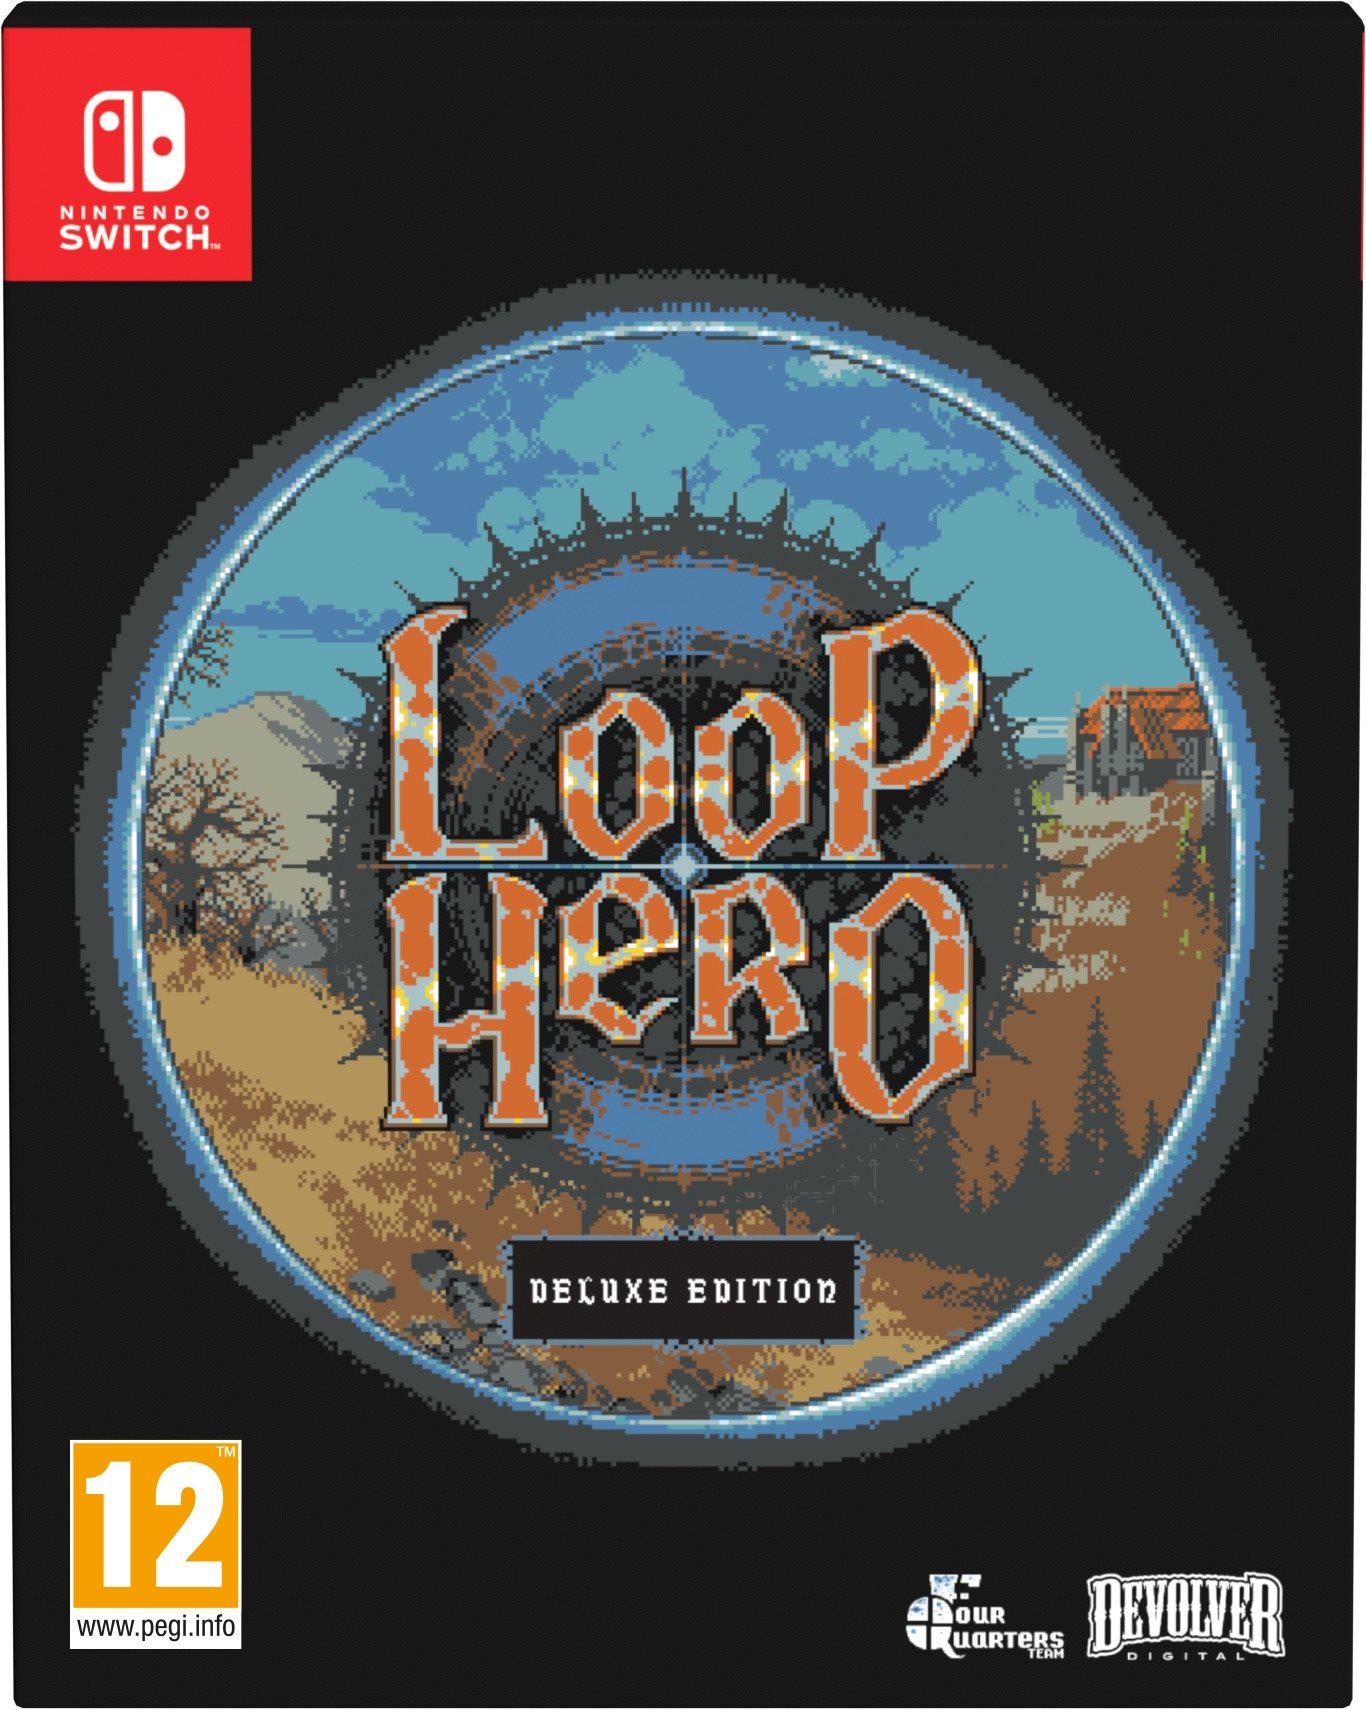 Loop Hero: Deluxe Edition - Nintendo Switch